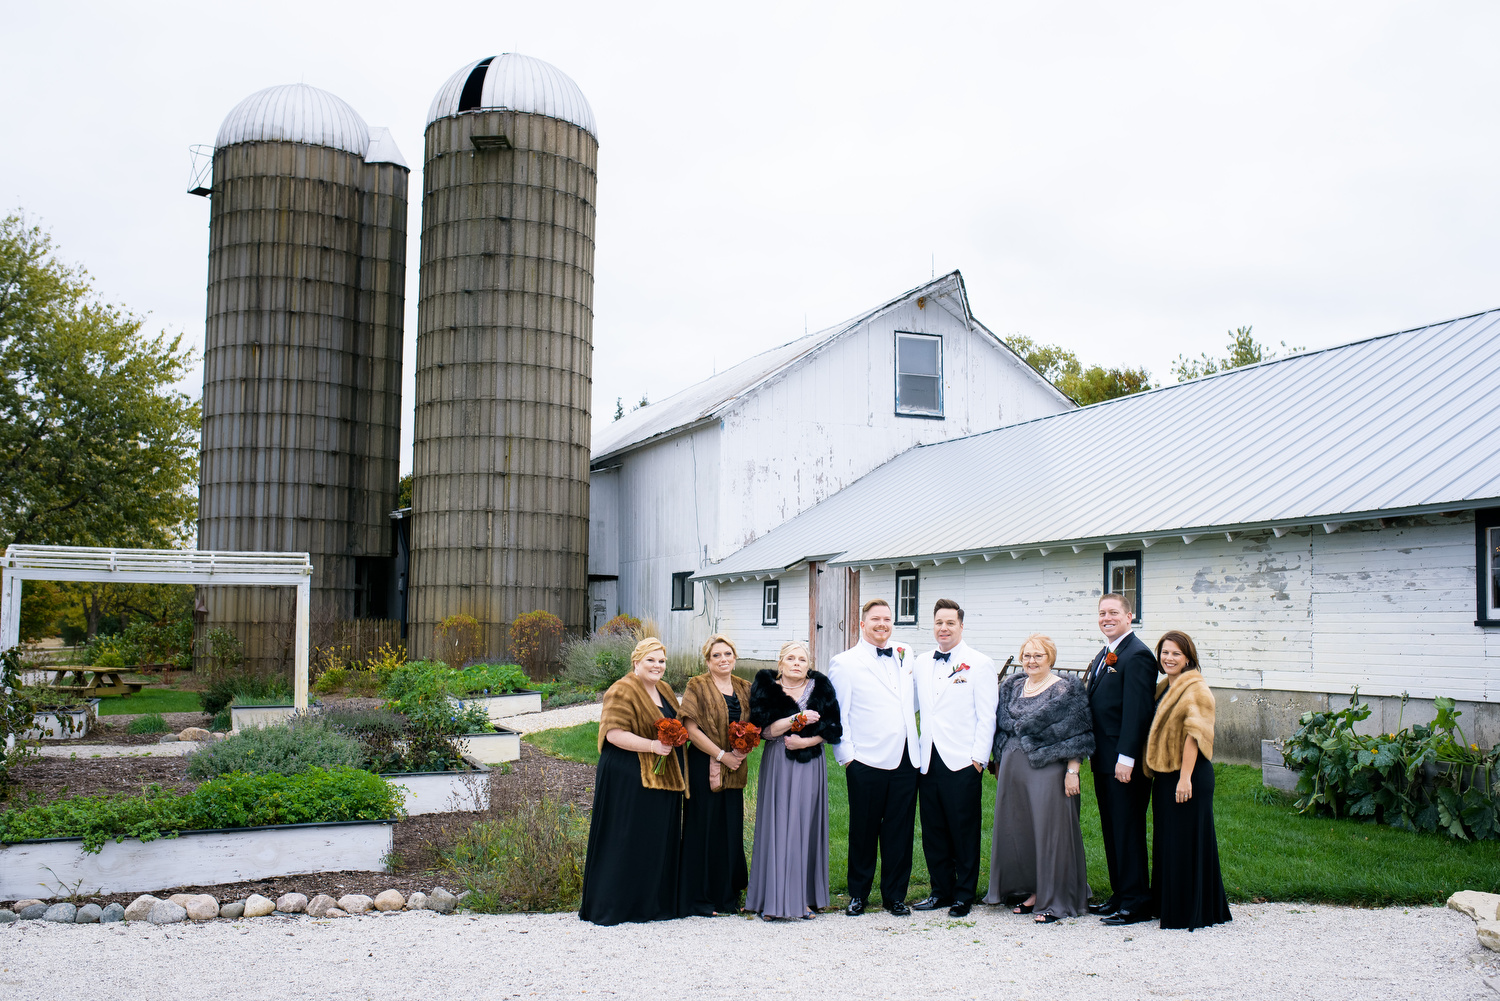 Wedding party photo at Heritage Prairie Farm.